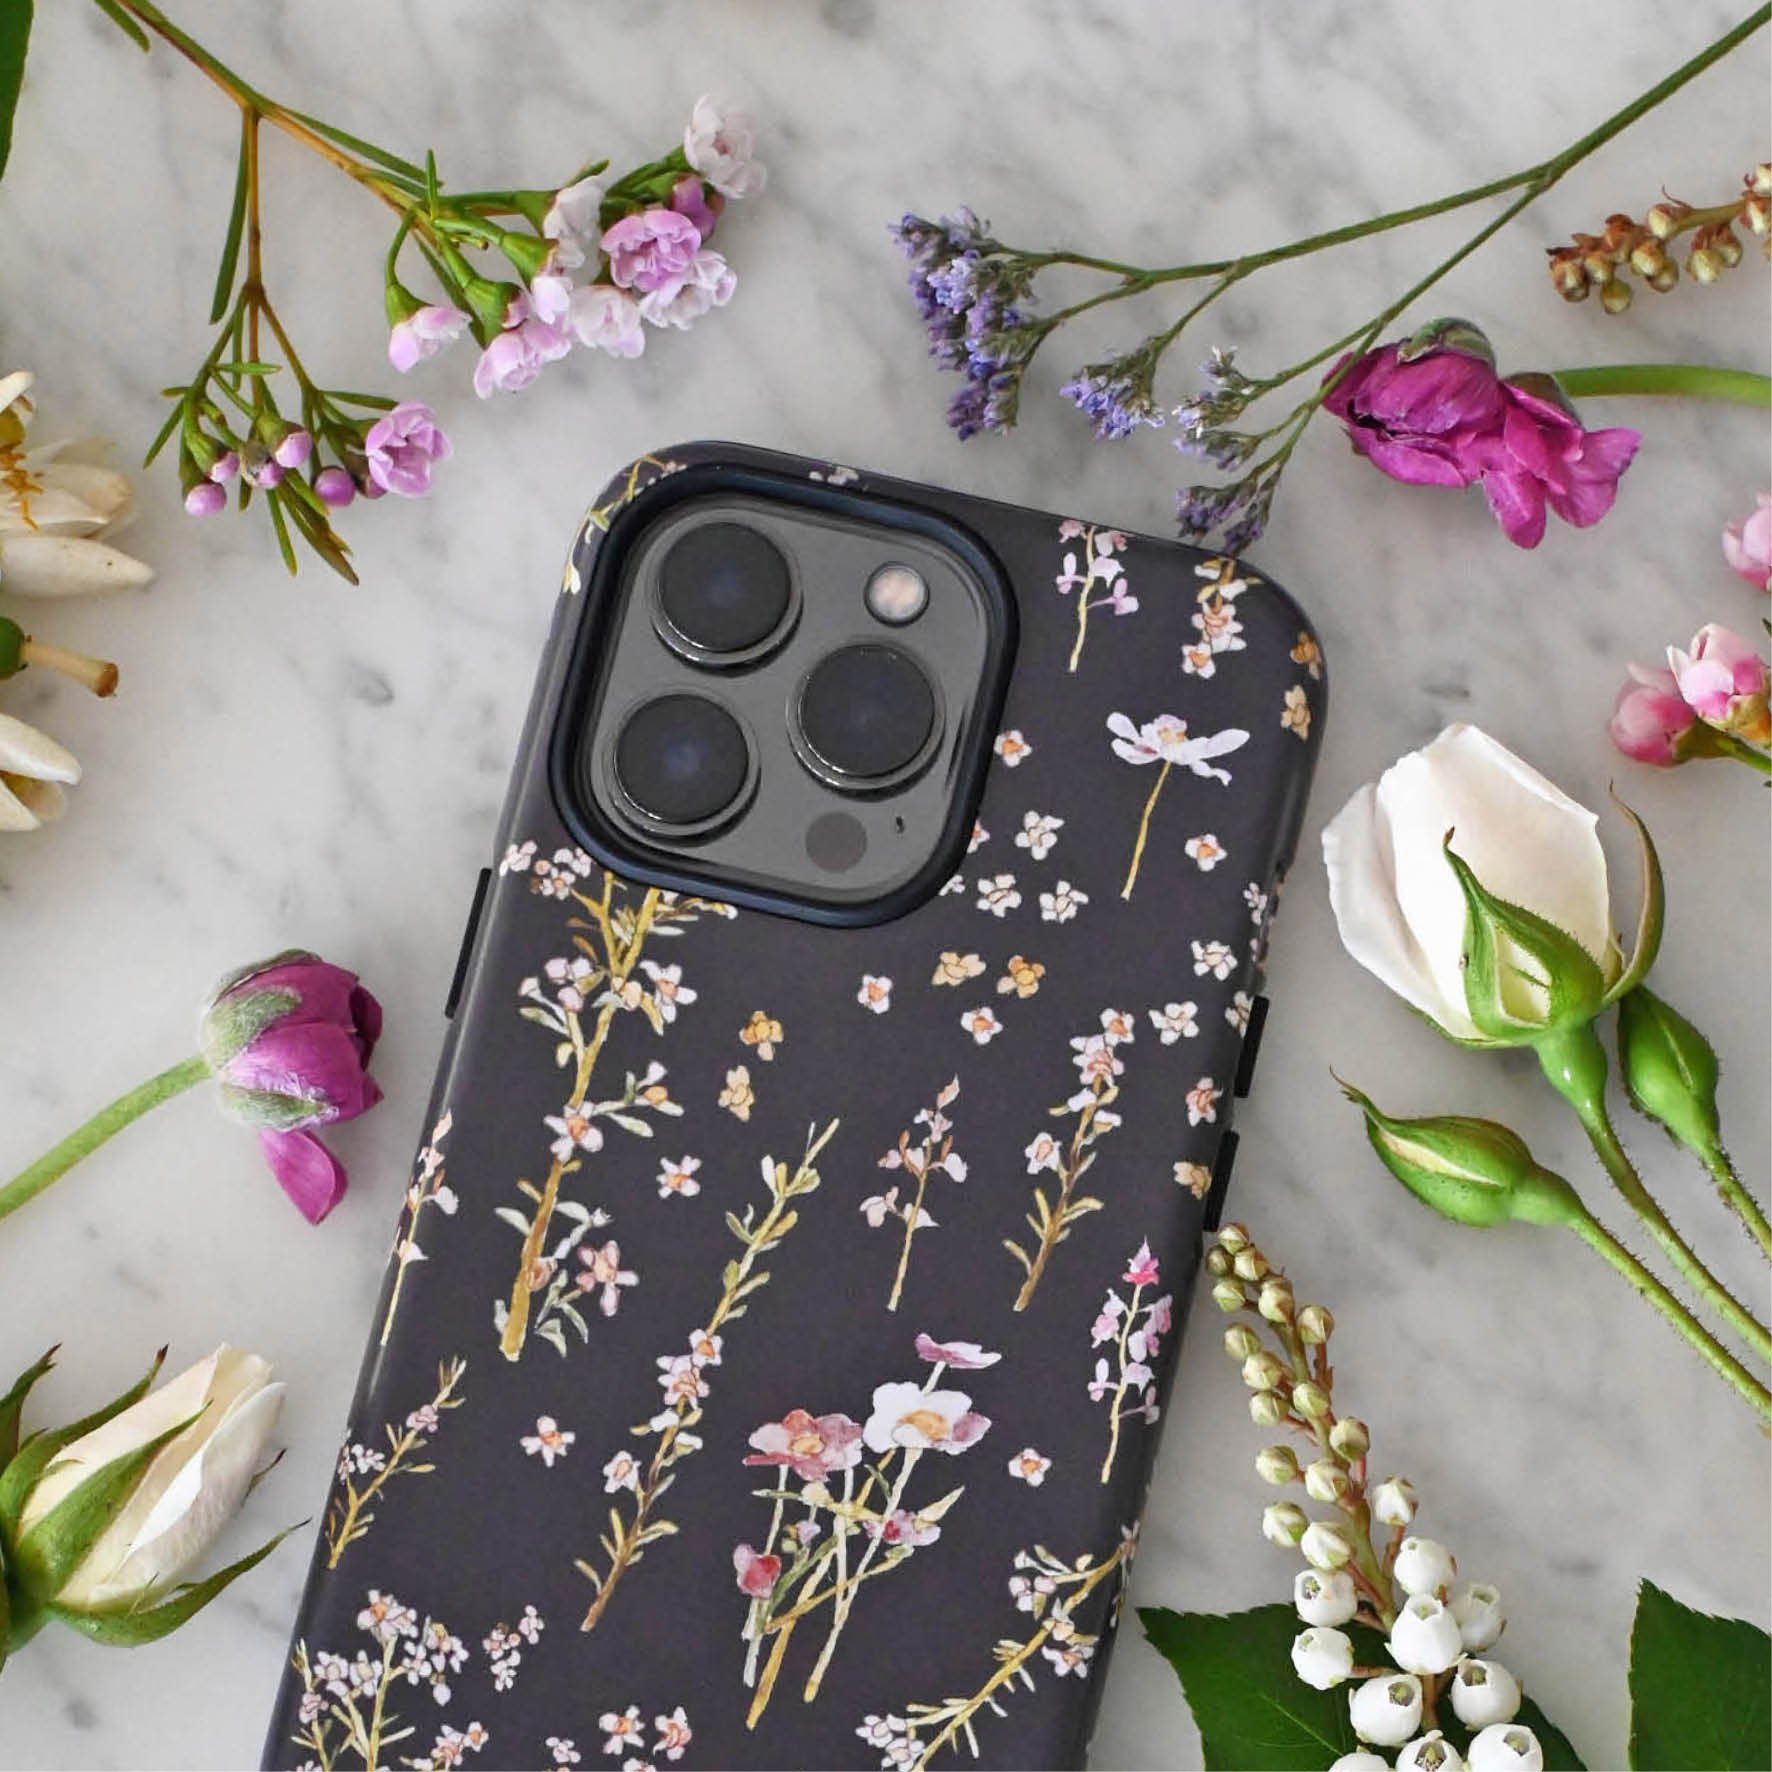 cordelia-cute-flower-phone-case.jpg